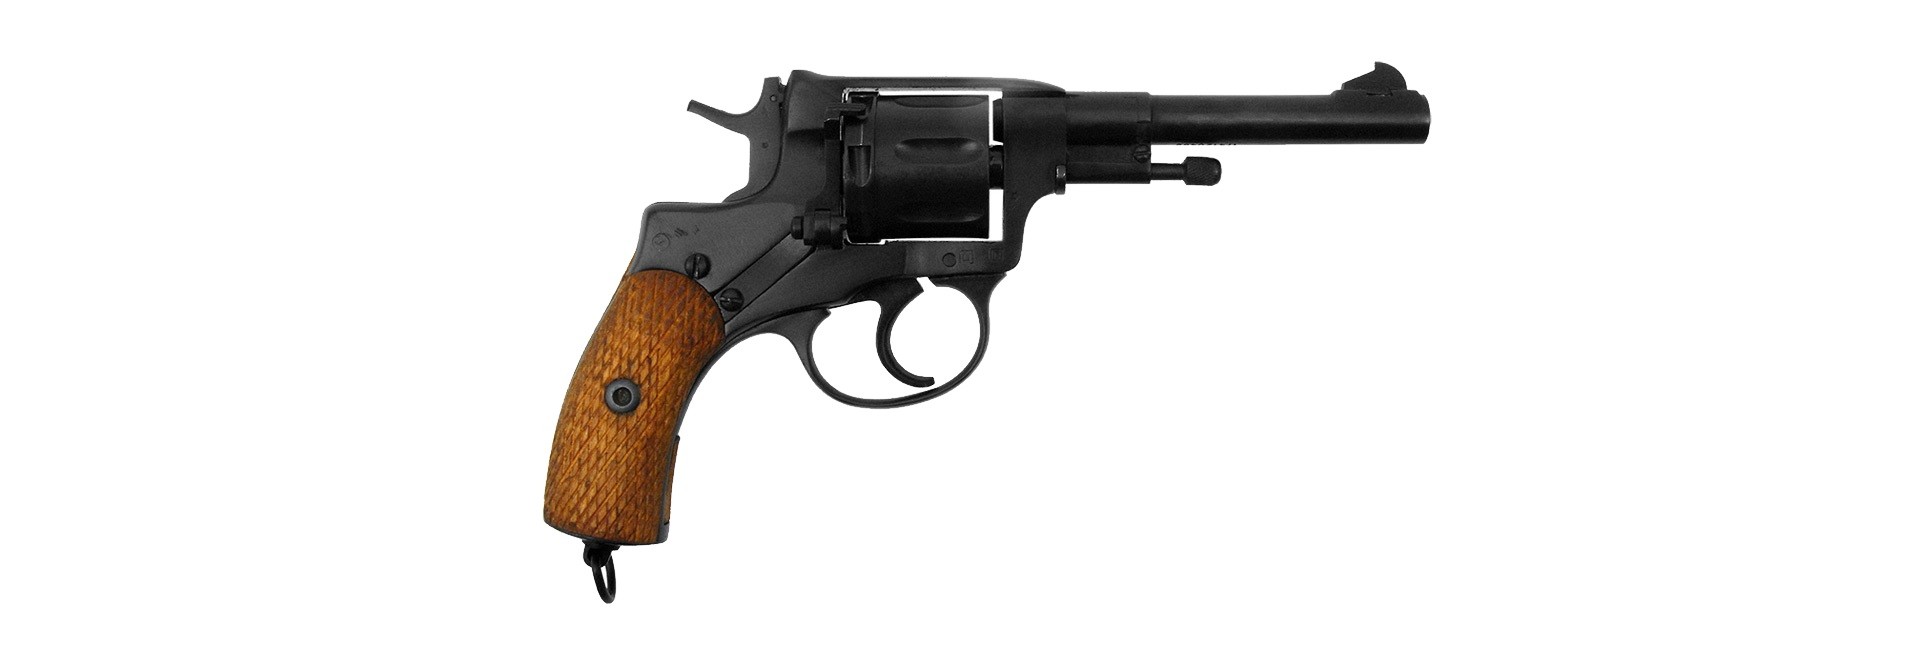 Револьвер КК СХ Наган ИЖ-172 КОМ1 списанный охолощенный - фото 1